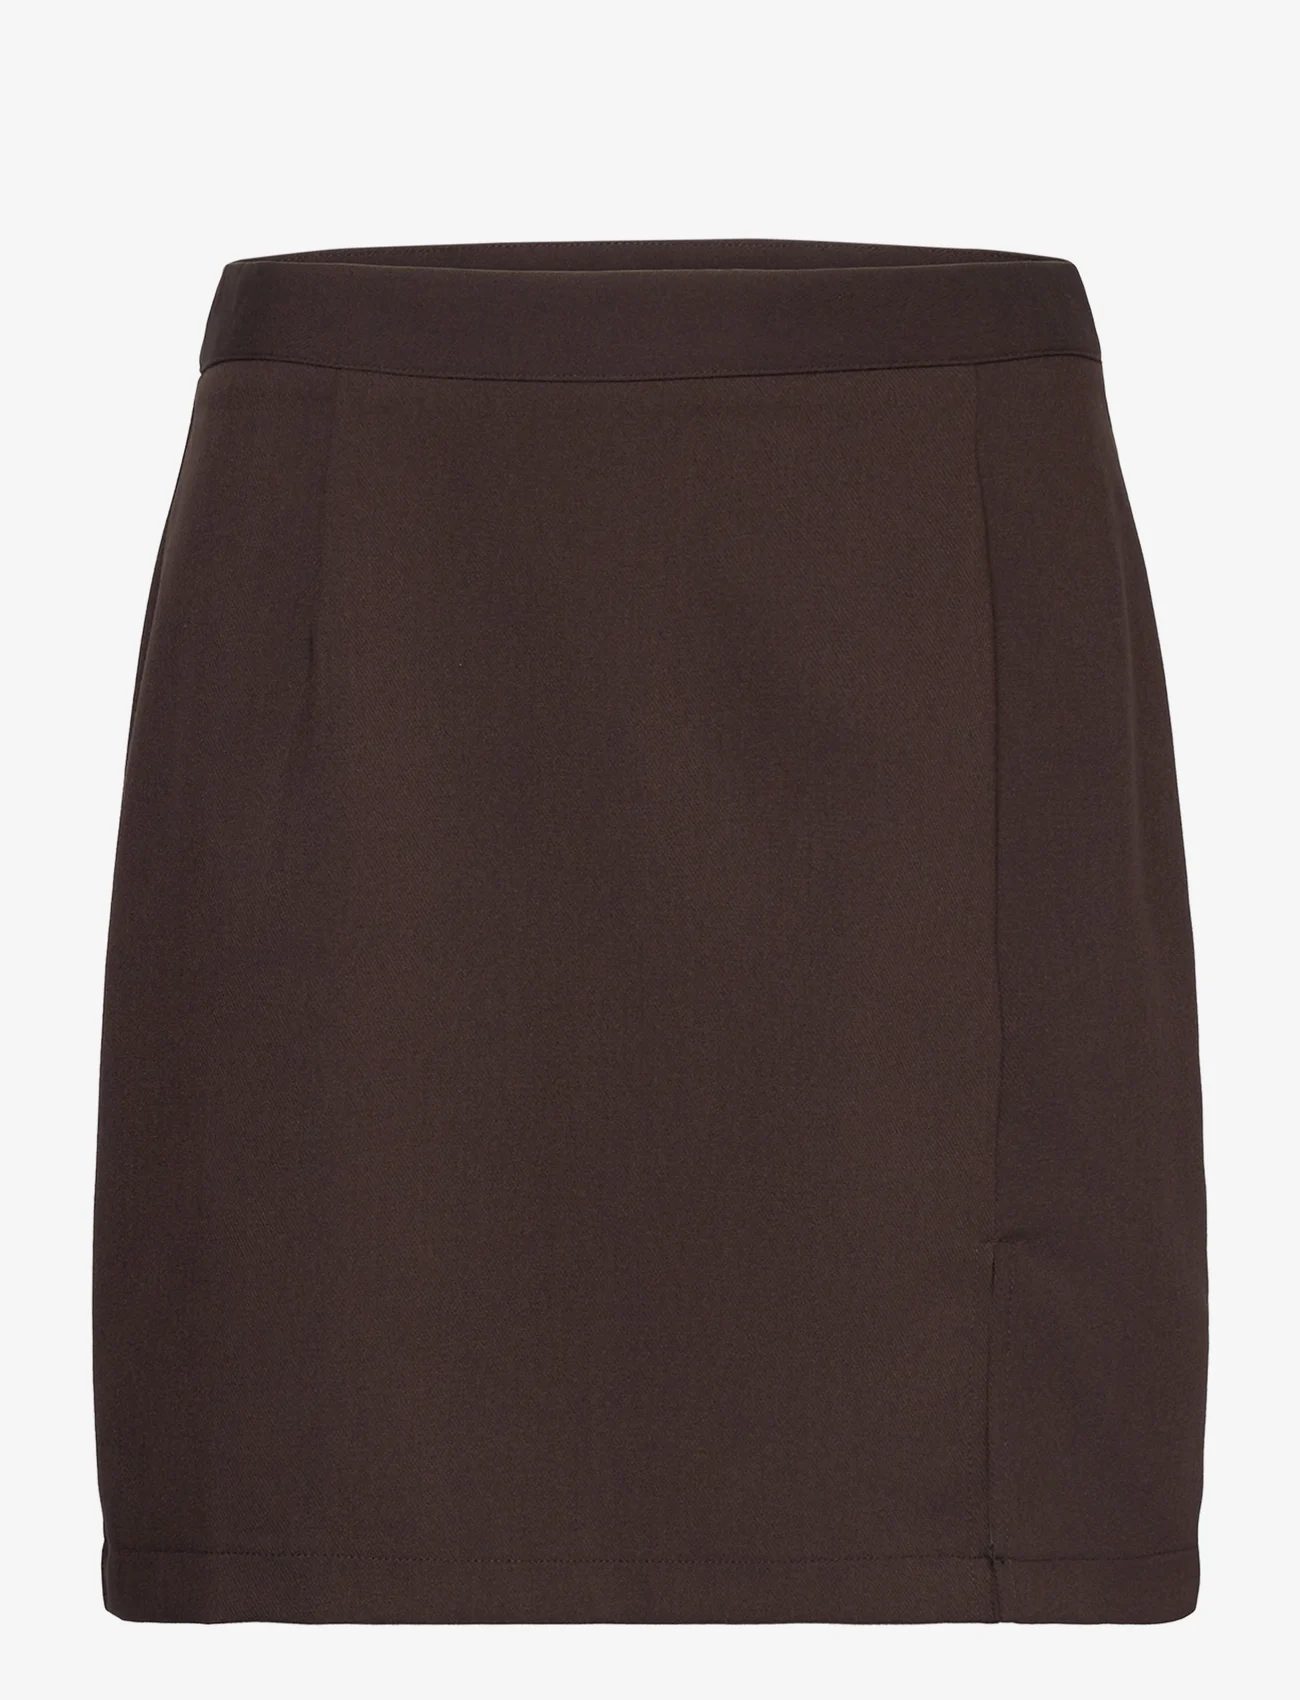 A-View - Annali skirt-1 - kurze röcke - brown - 0